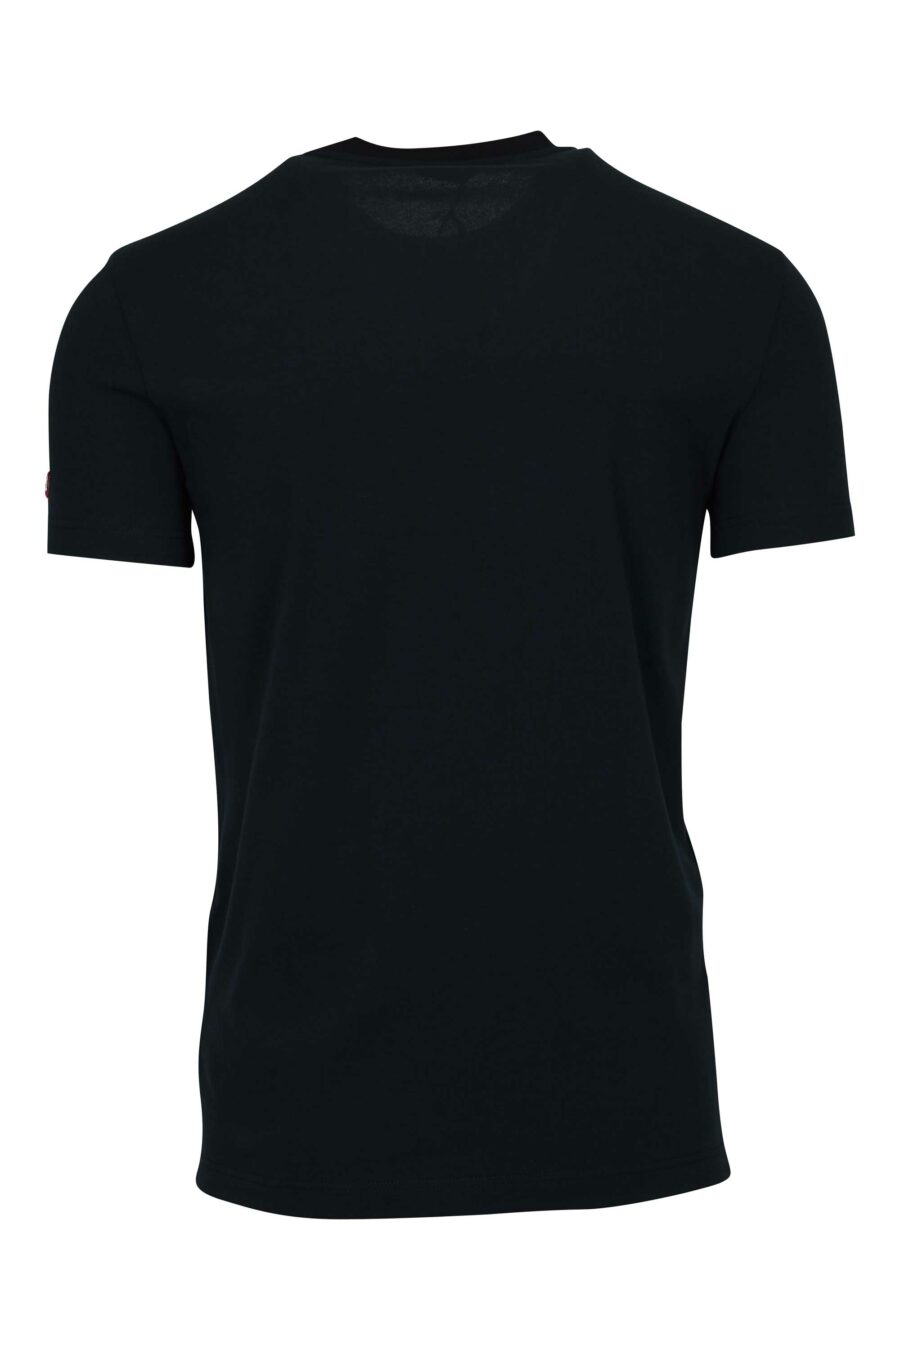 T-shirt preta com etiqueta com logótipo - 8032674811202 1